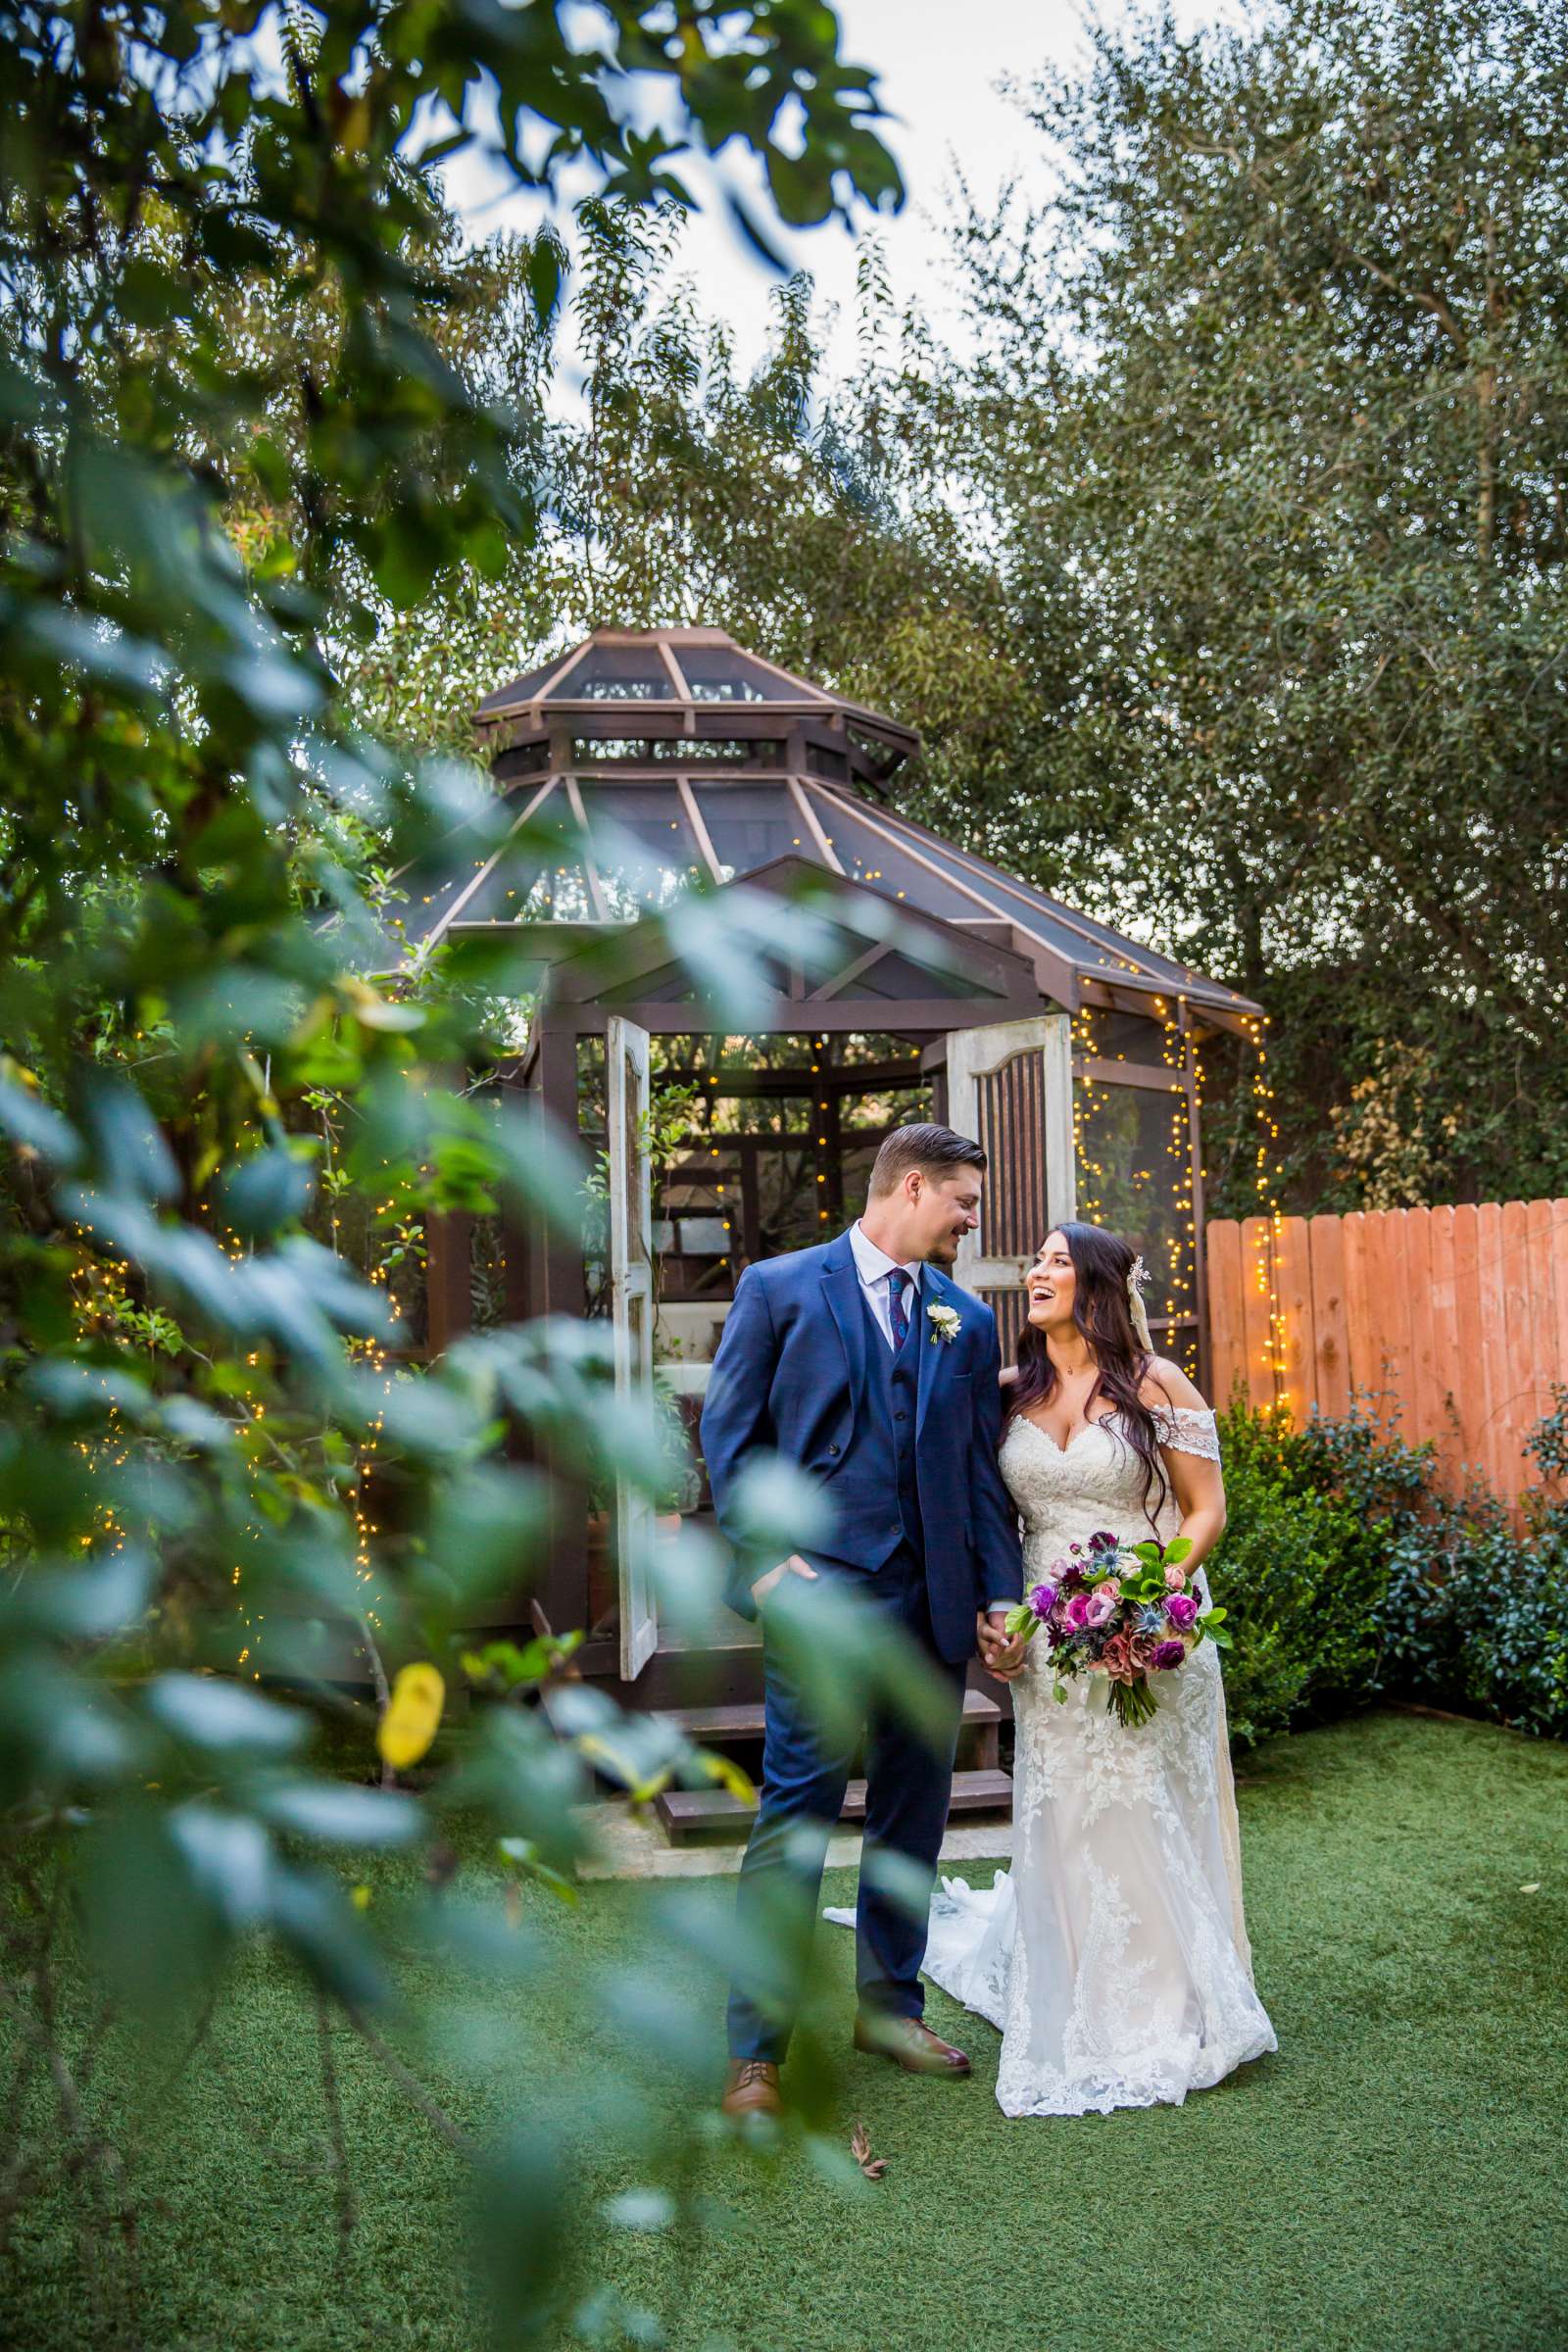 Twin Oaks House & Gardens Wedding Estate Wedding, Stephanie and Ilija Wedding Photo #9 by True Photography